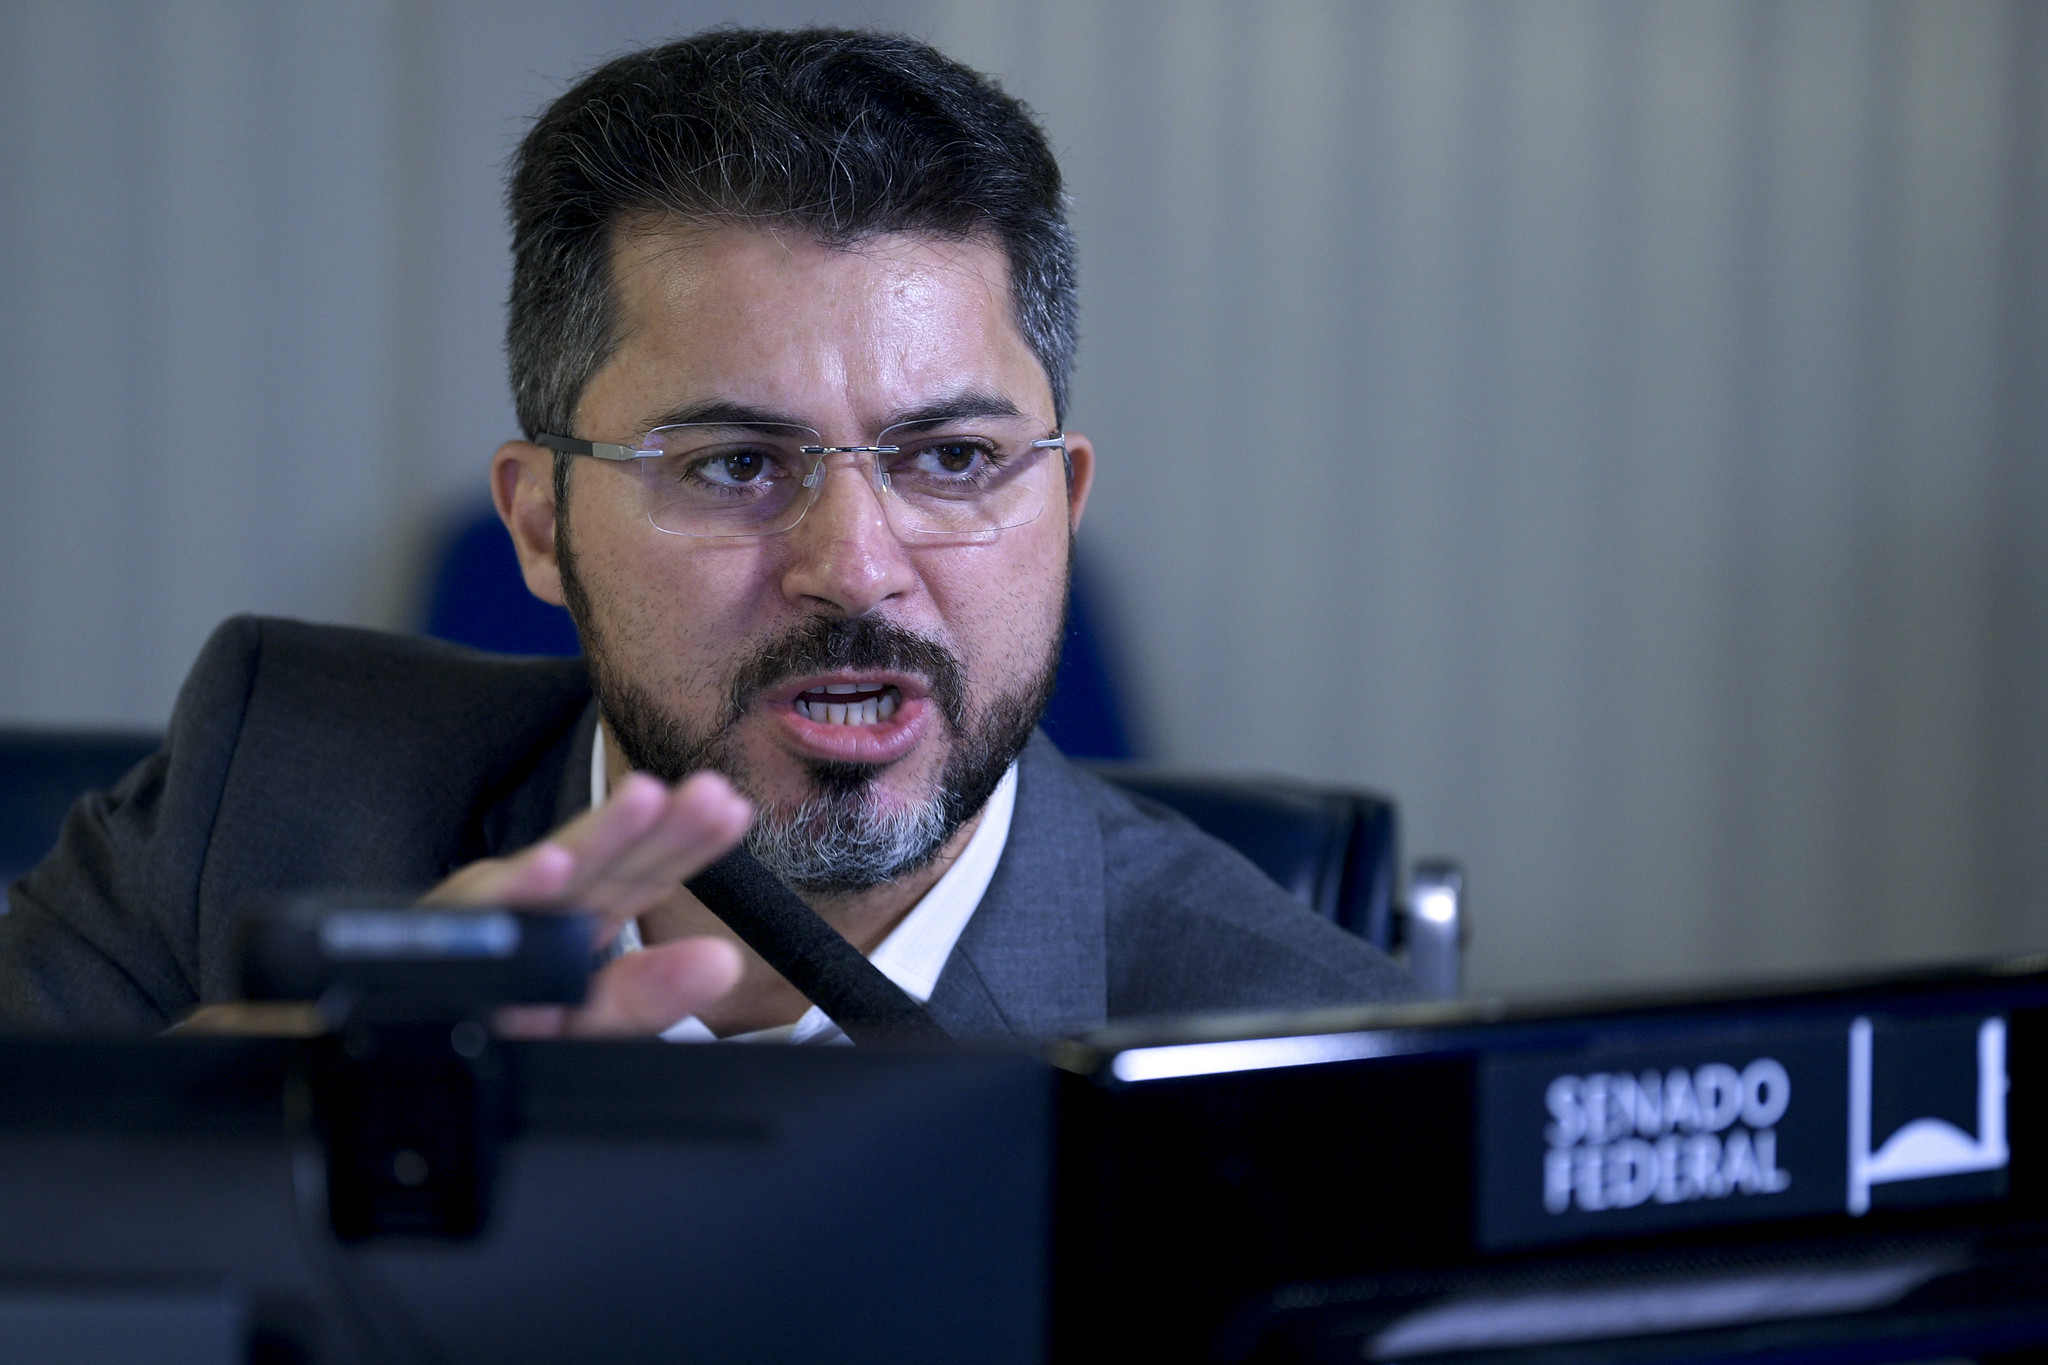 Senador Marcos Rogério